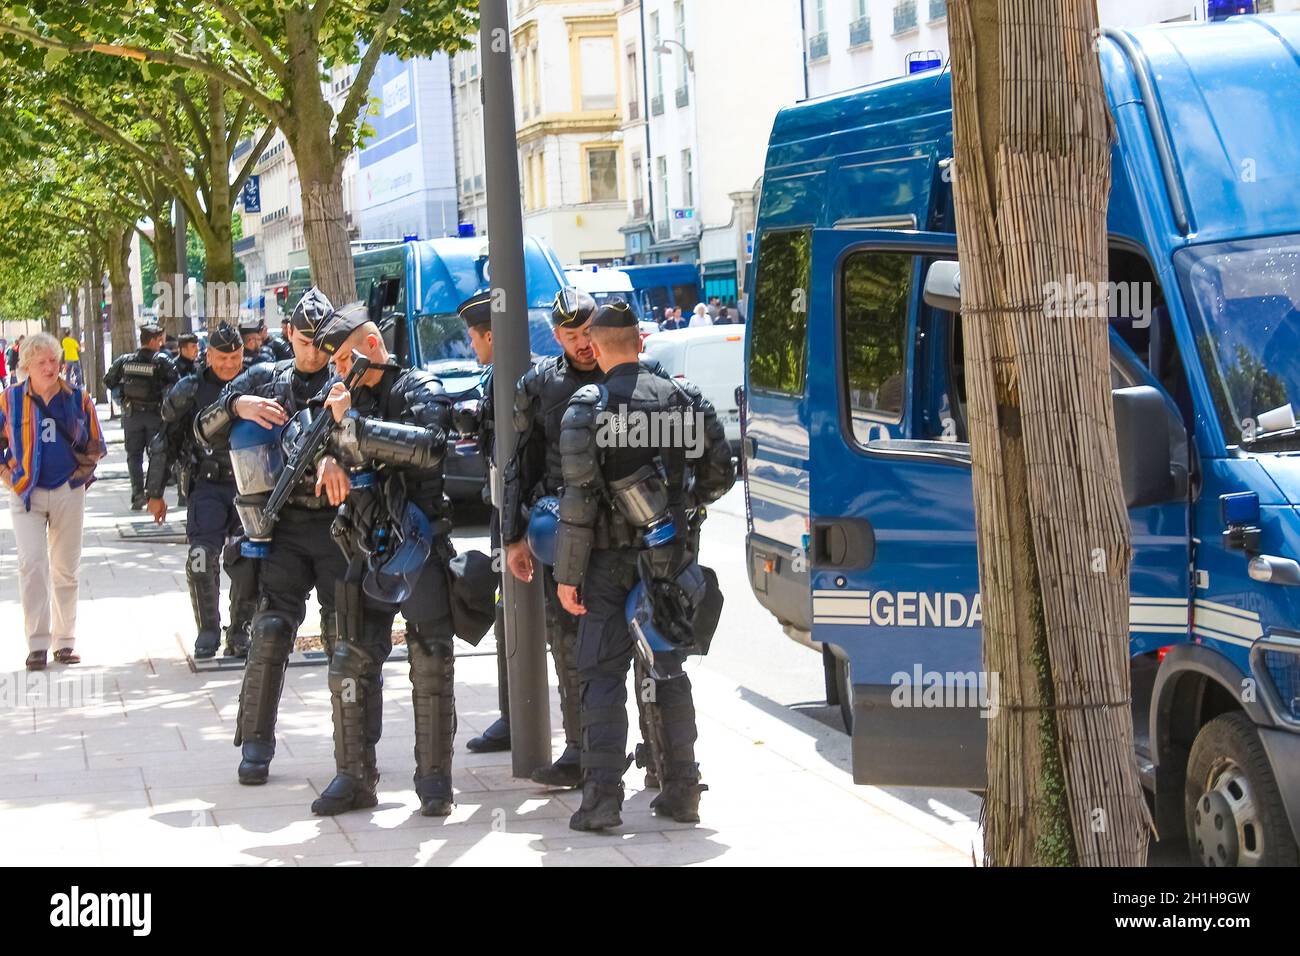 Lyon, Frankreich - 16. Juni 2016: Die Gendarmen auf der Straße in Lyon, Frankreich, am 16. Juni 2016 Stockfoto